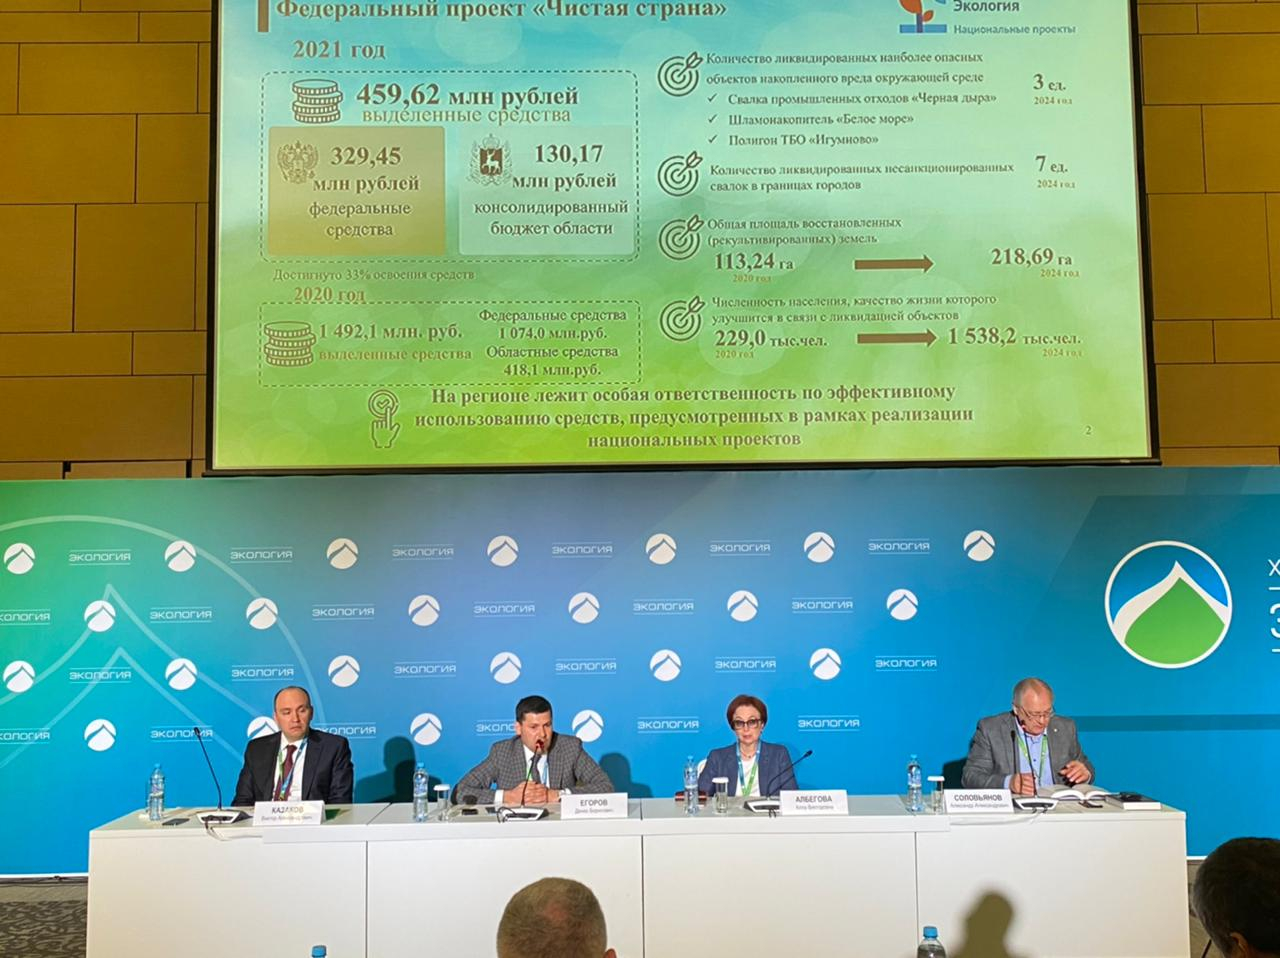 Нижегородская область представила предложения о совершенствовании национального проекта «Экология» на международном форуме